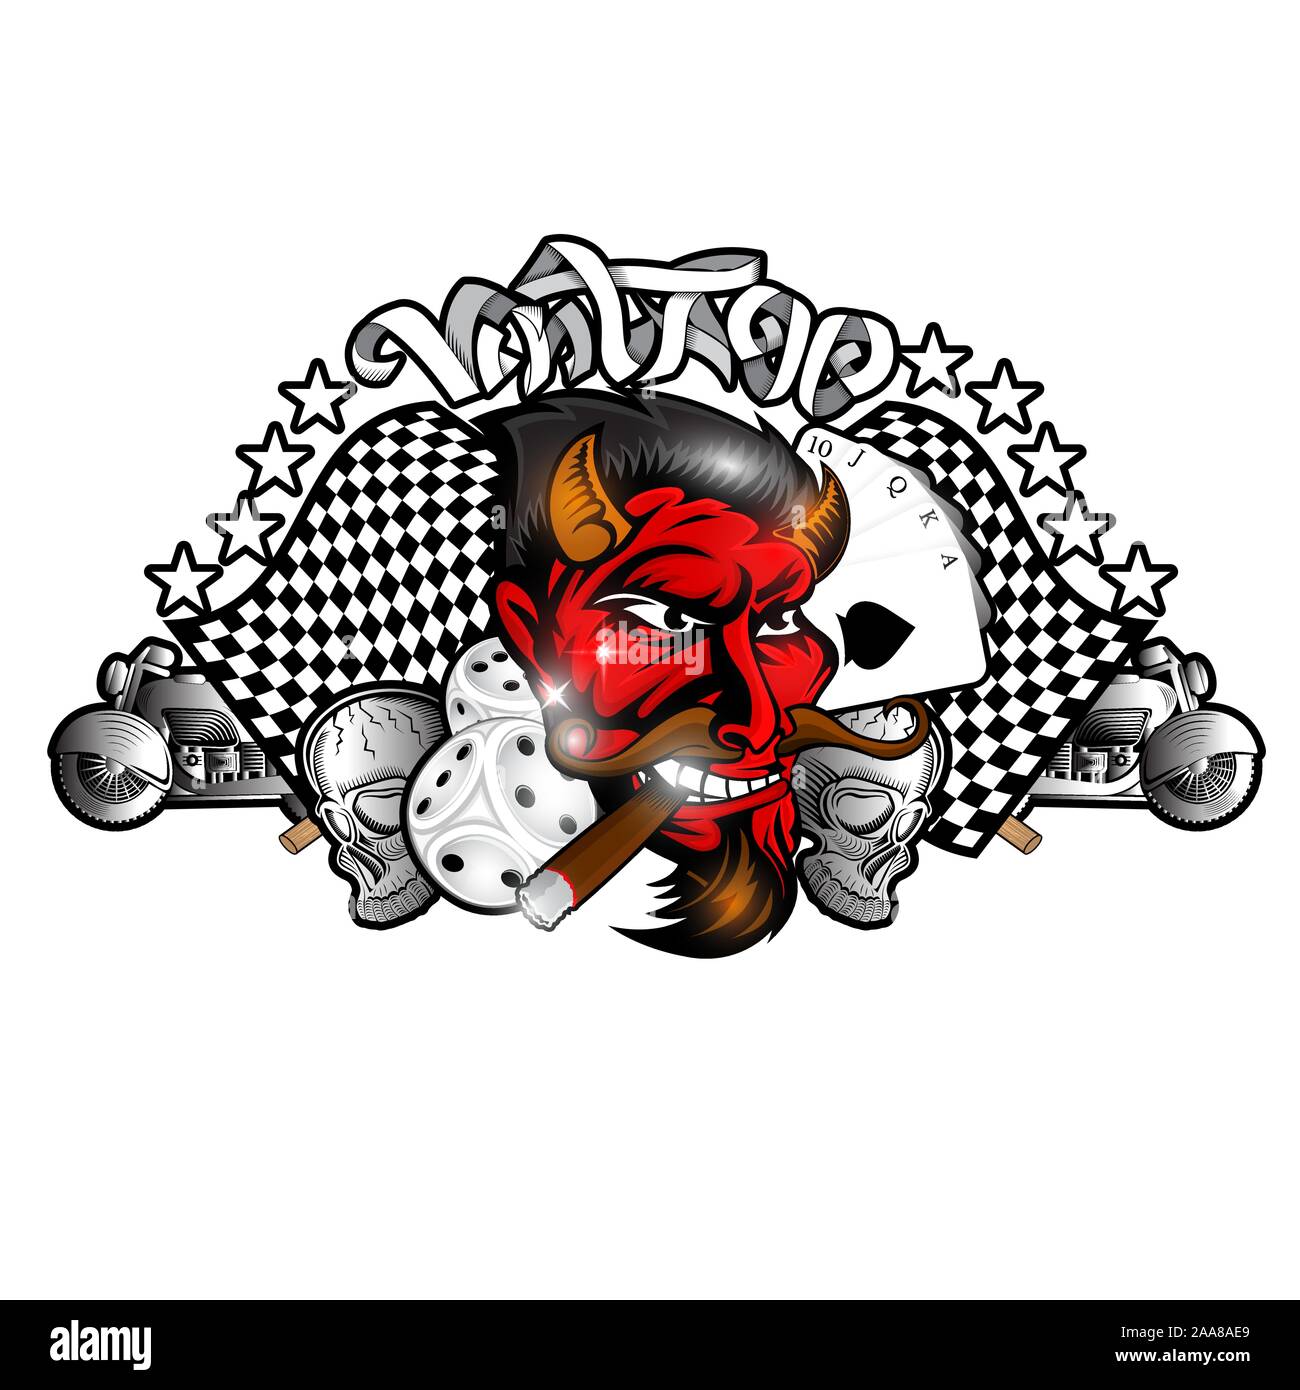 Kopf des Rauchens red devil zwischen Würfel, Karte Motorrad und Schädel. Etikett oder Logo für Rockabilly, Tätowierung oder sport team Stock Vektor